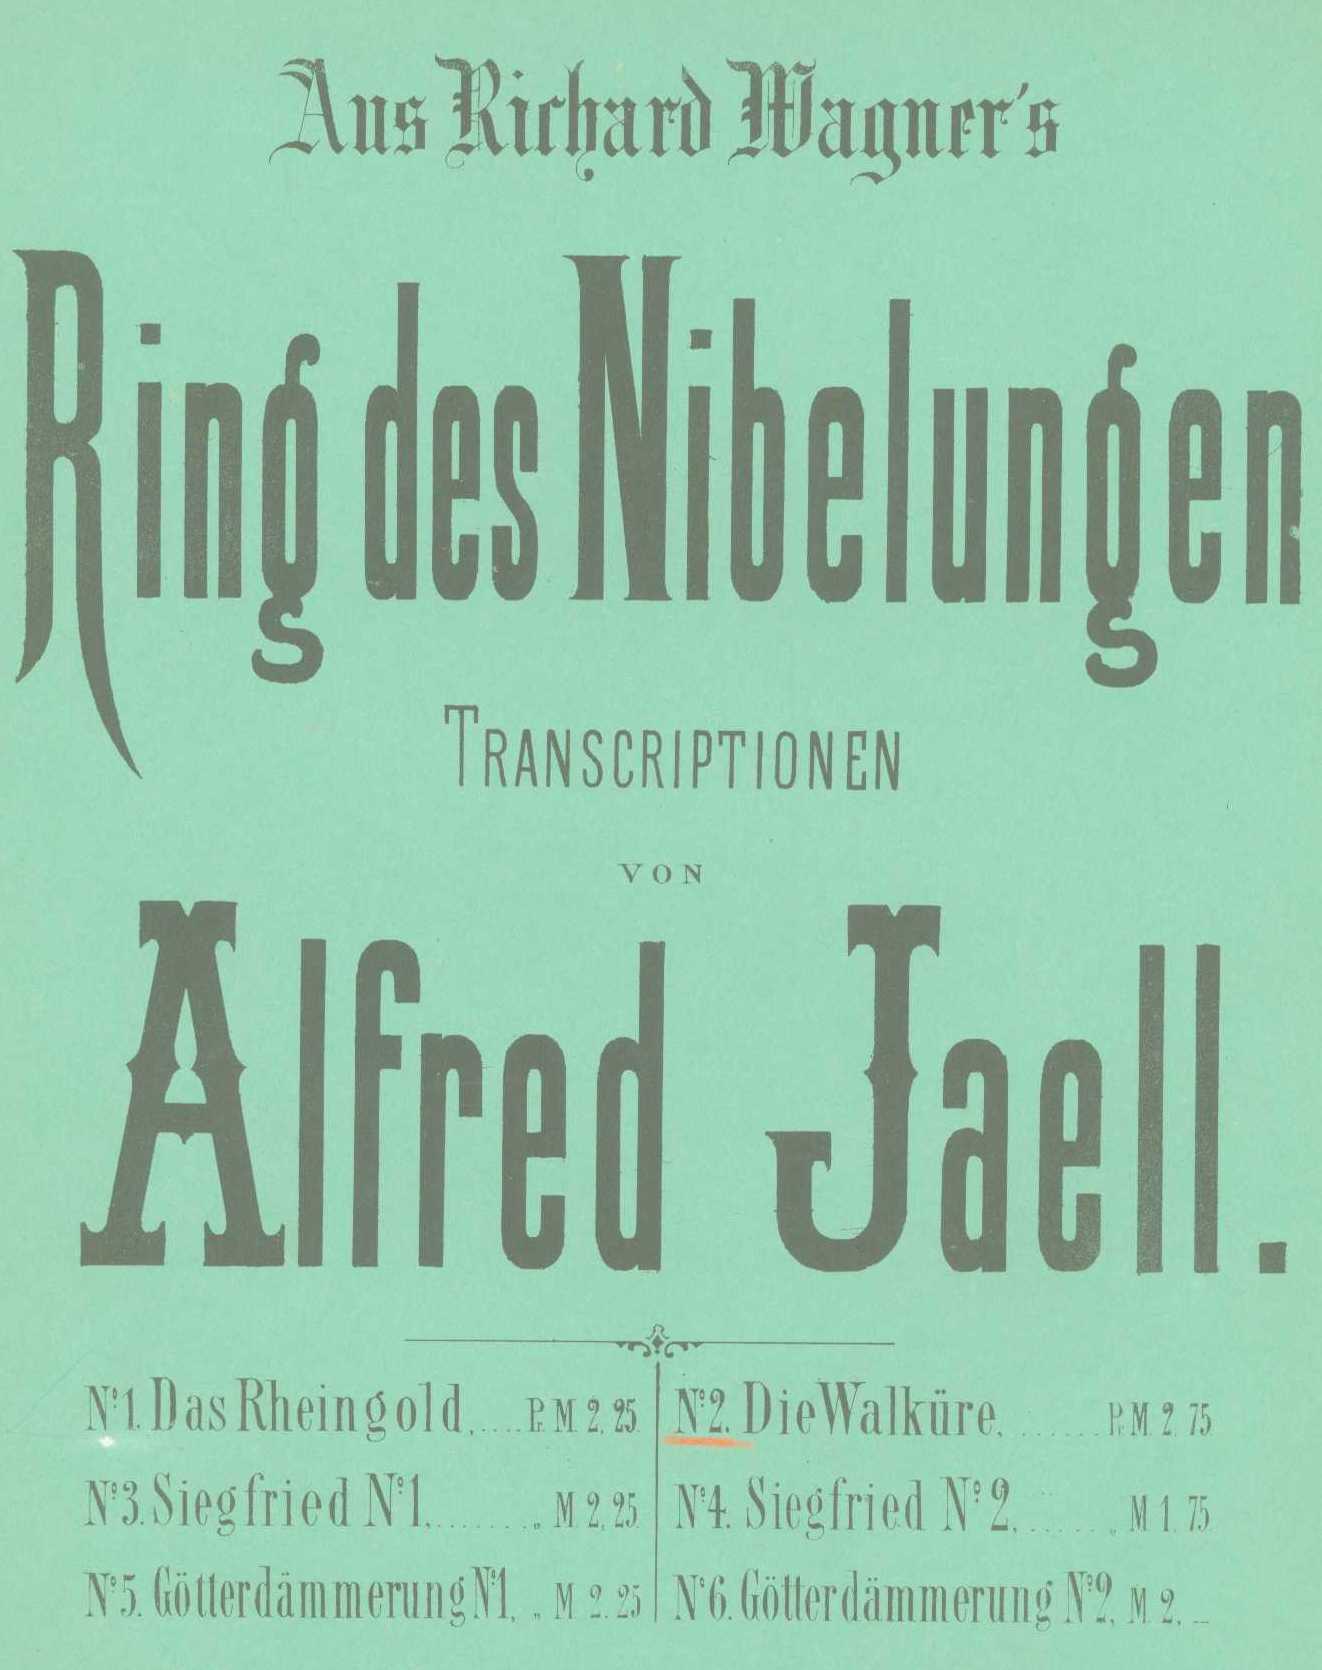 Jaell, Alfred - Aus Richard Wagner's Rheingold, Transcription für